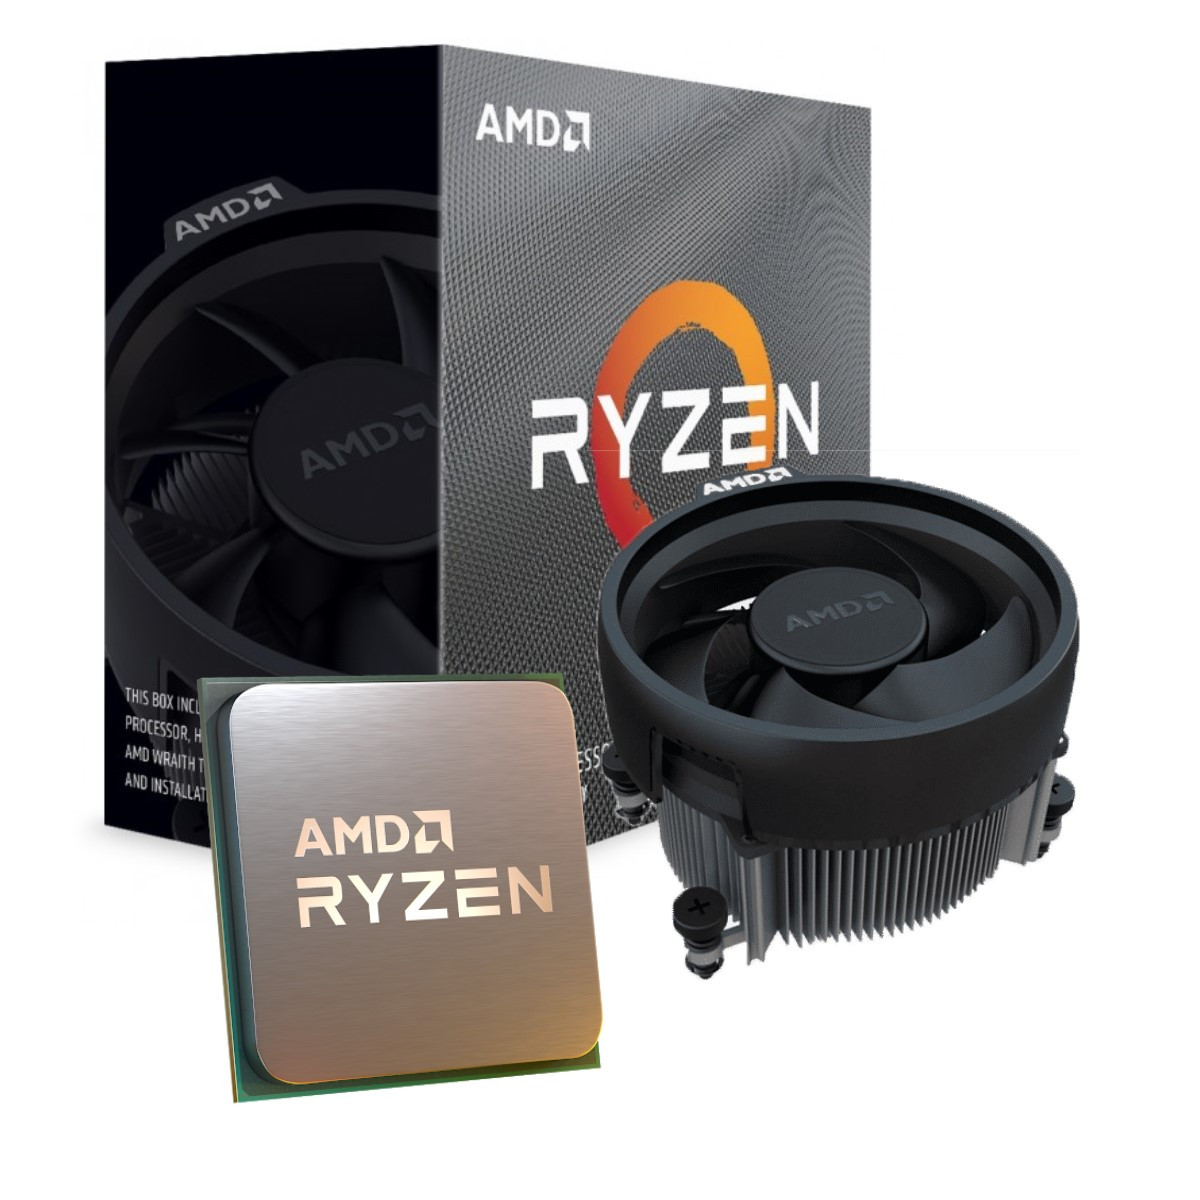 Imagen PC Gamer Ryzen 5 3600XT 1650 Super / 16 Ram xpg d60, SSD 480, Board Asus Prime X570, Chasis XPG Battlecruiser, Fuente Corsair 650 2